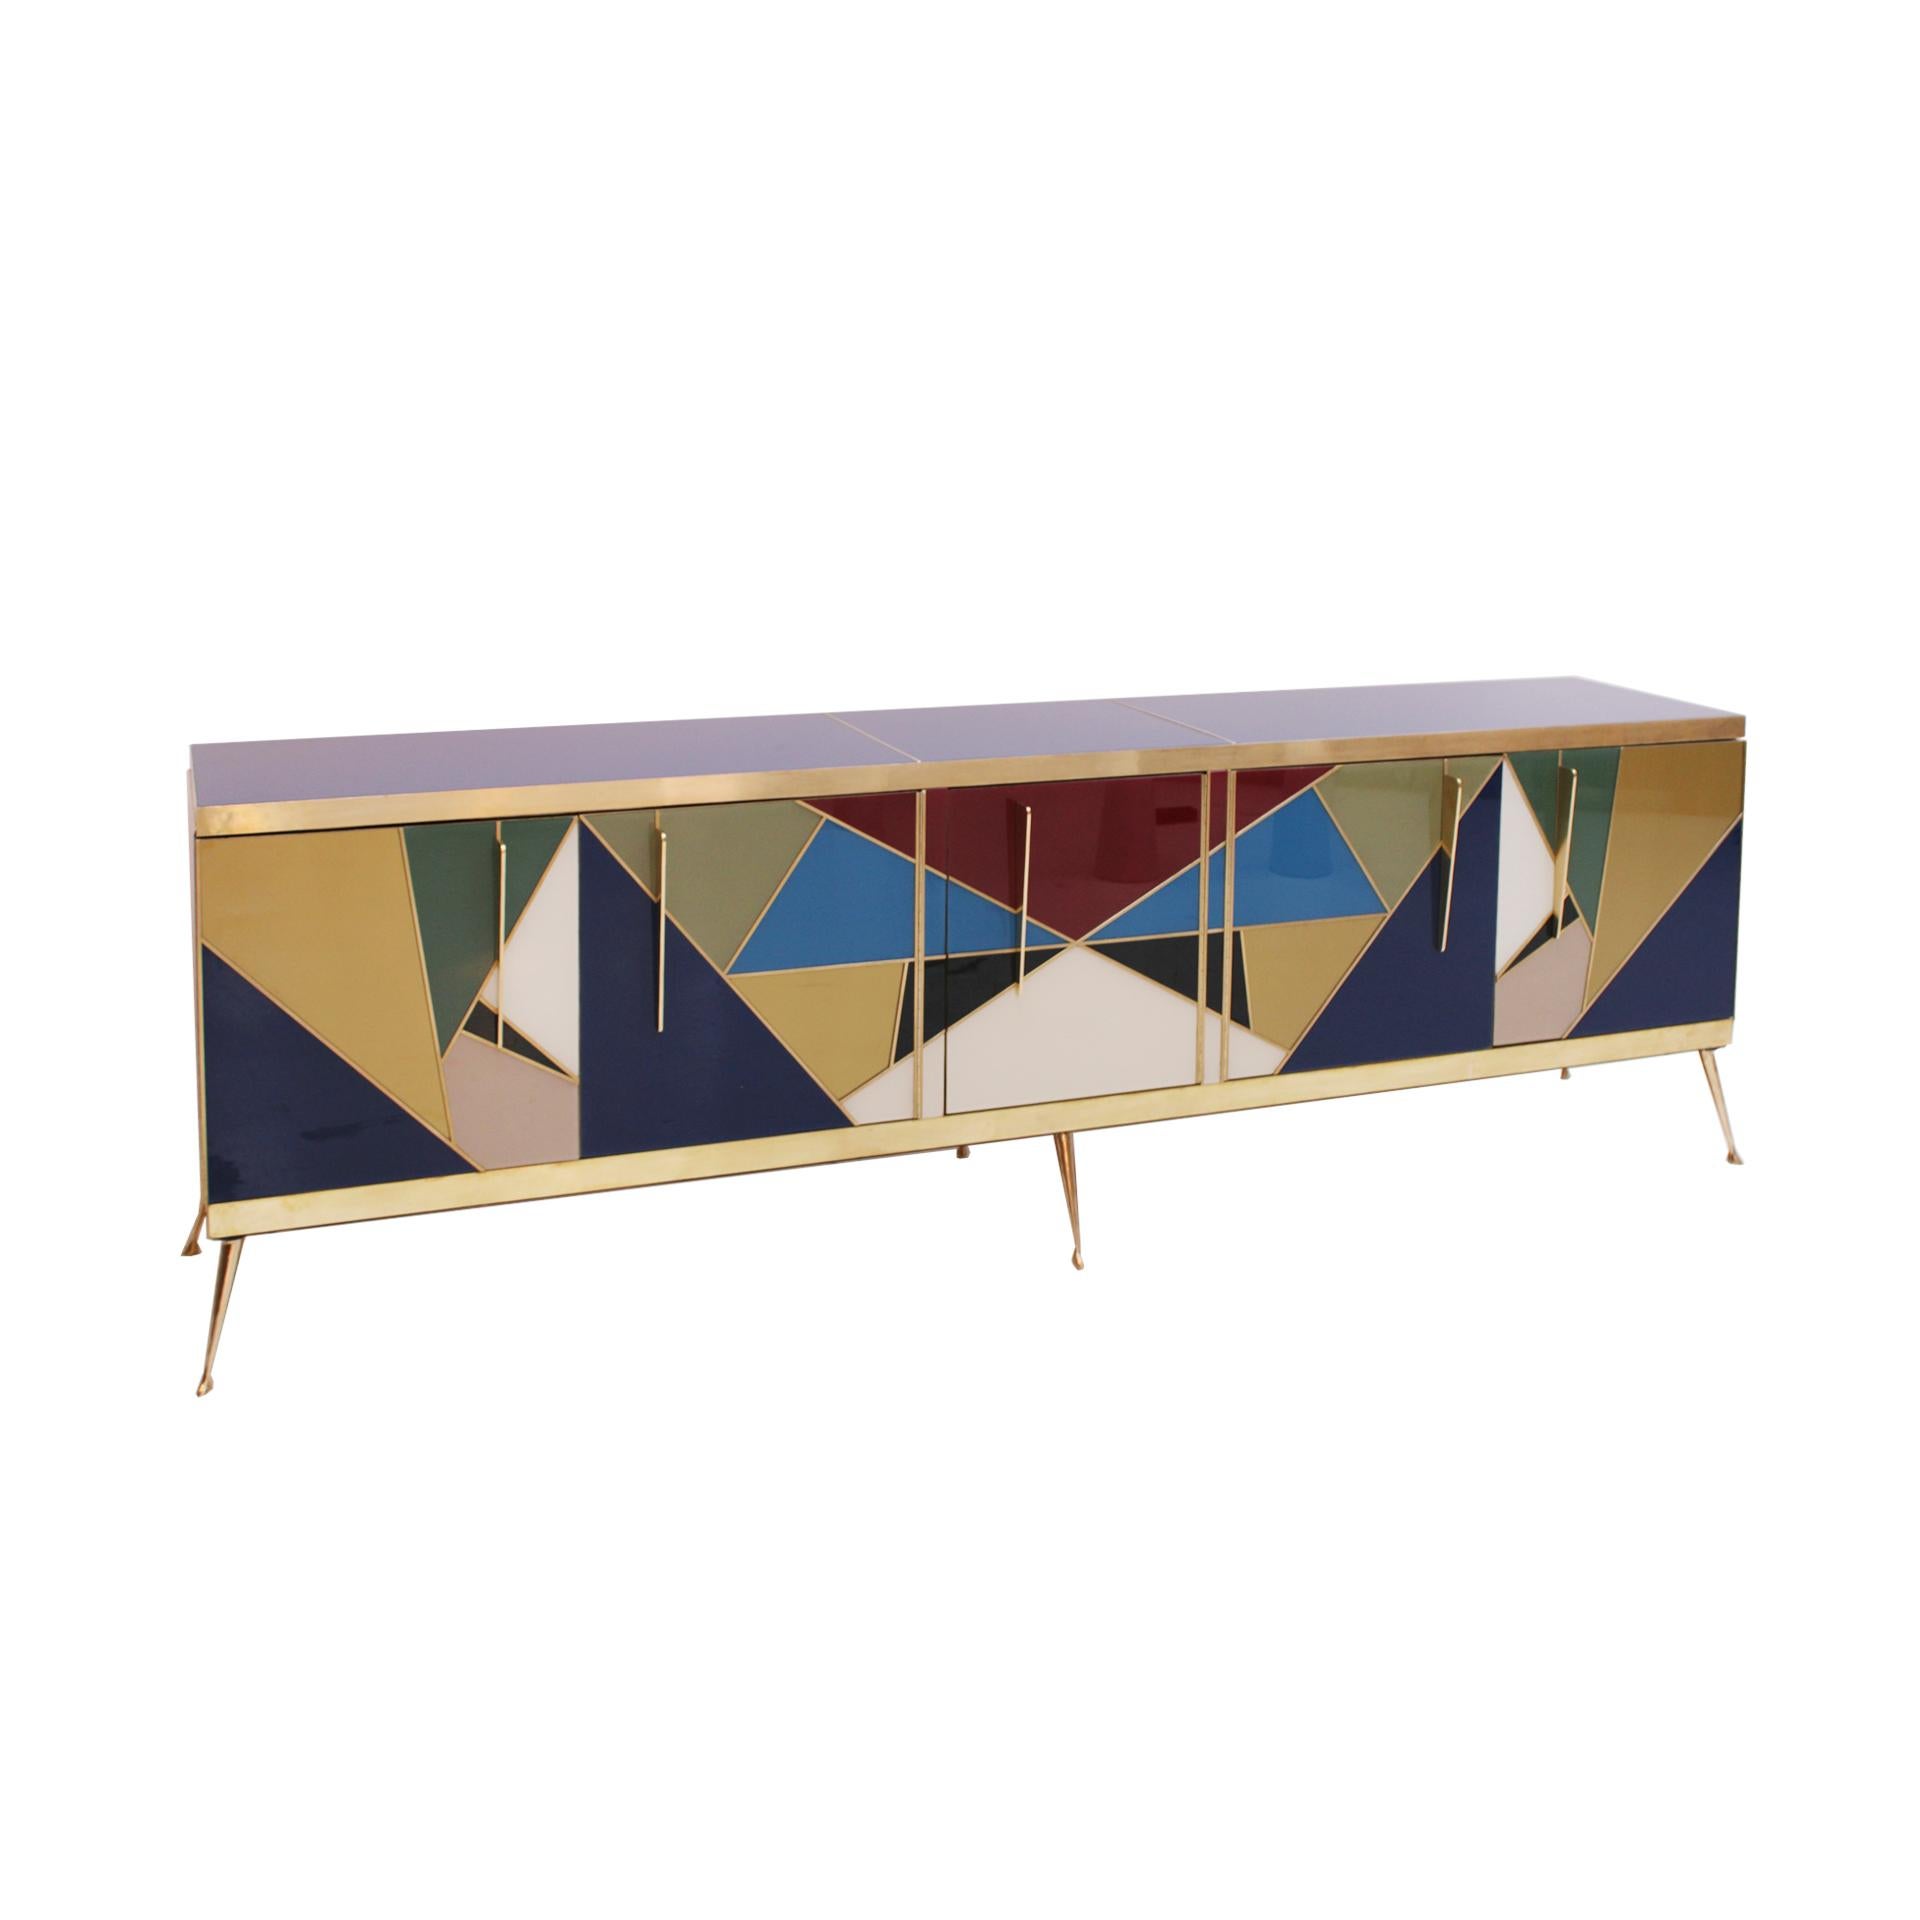 Italienische Anrichte aus Massivholzstruktur aus den 1950er Jahren mit farbigem Murano-Glas verkleidet. Geometrische Art-déco-Komposition. Bestehend aus fünf Türen mit Messinggriffen und Beinen. Innere Schubladen auf der rechten Seite.

Jeder